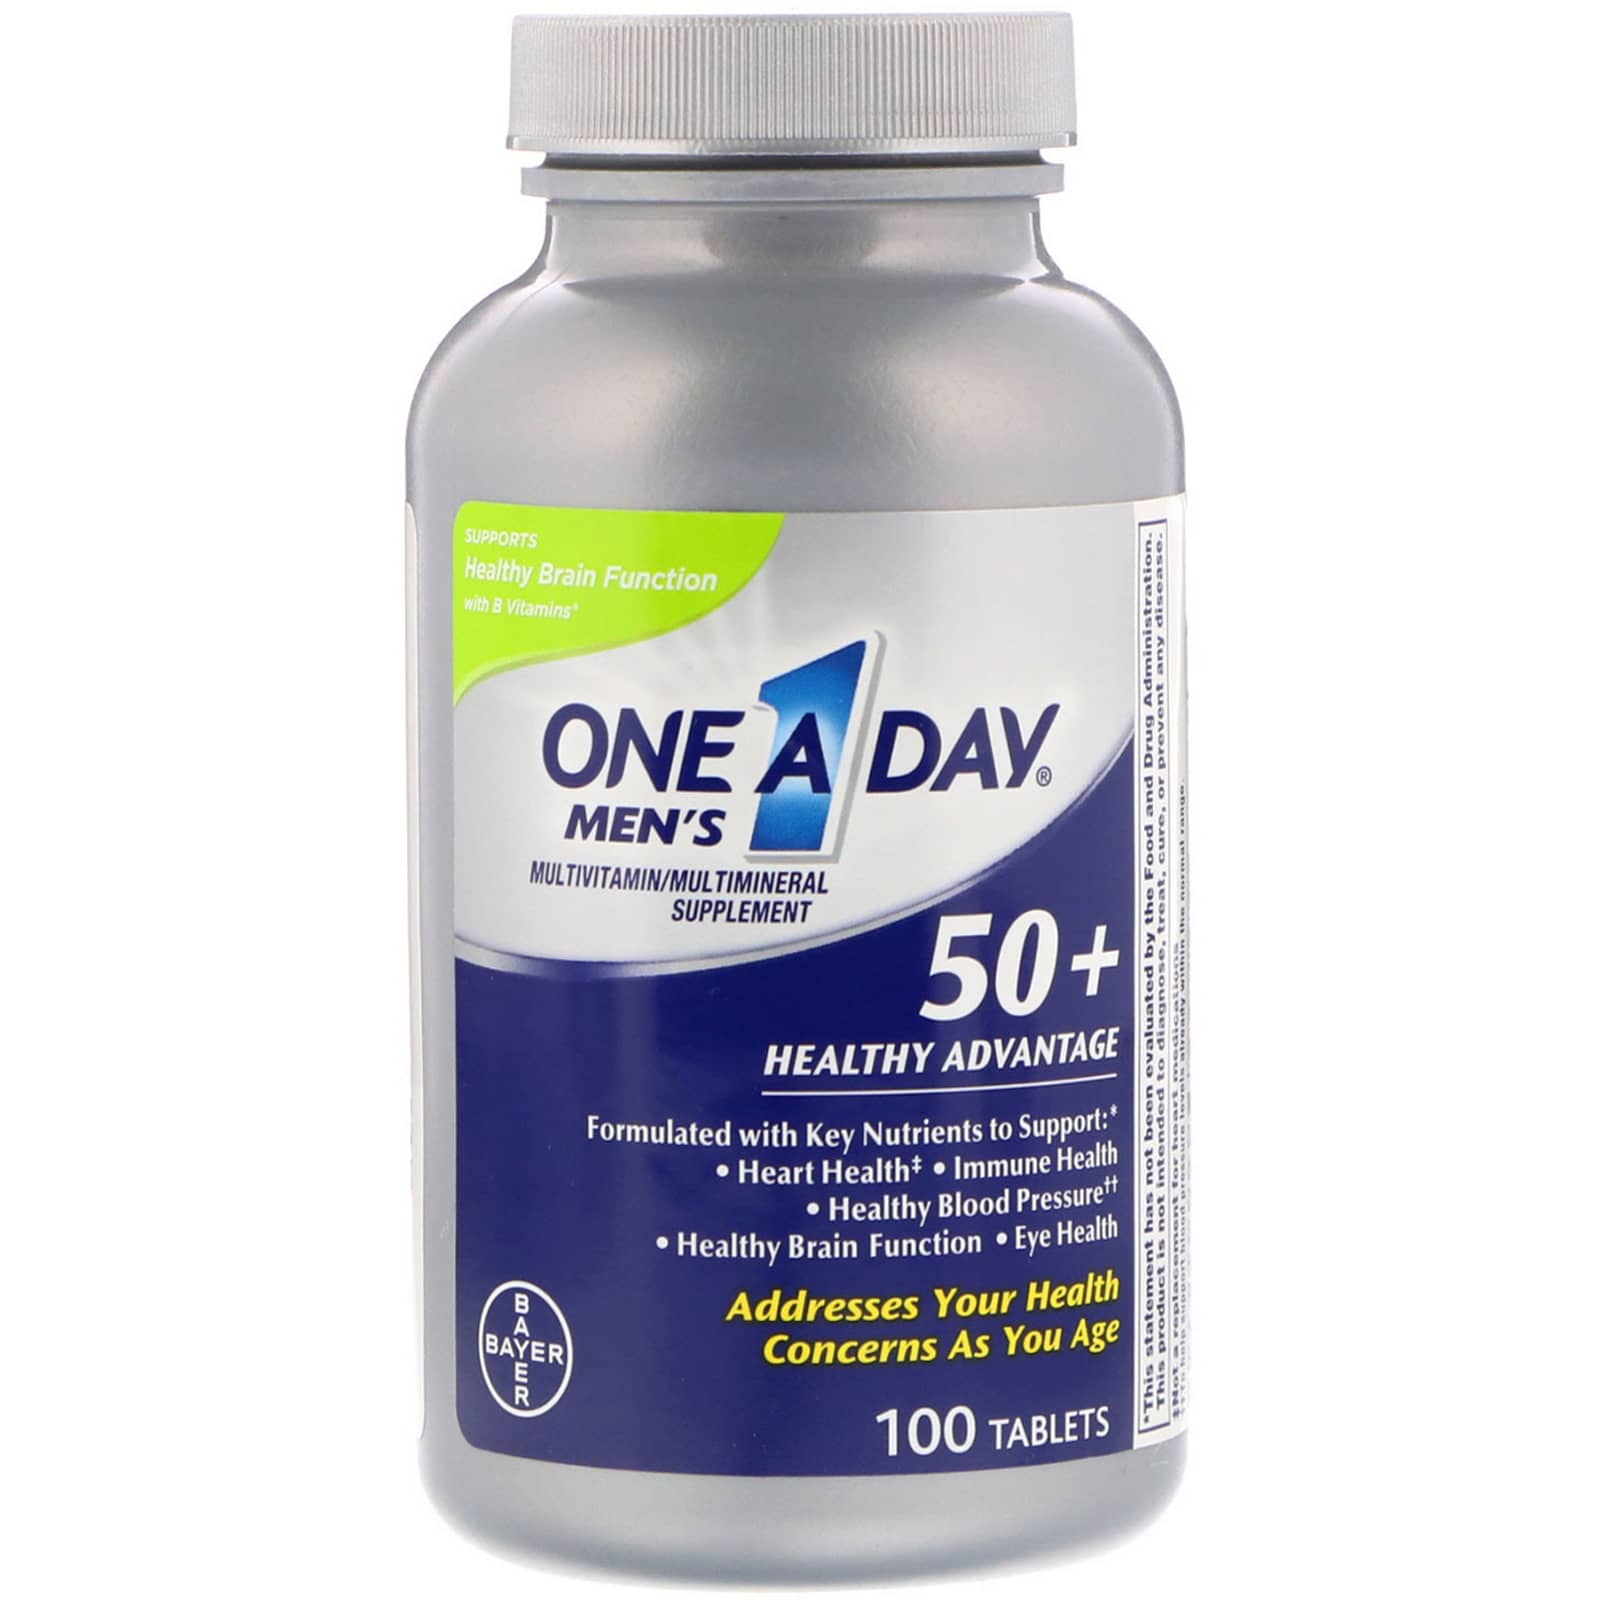 Витамины для мужчин после 50 отзывы. One a Day витамины для мужчин. Витамины Bayer one a Day. Витамины для мужчин 50+. Bayer one a Day для мужчин.